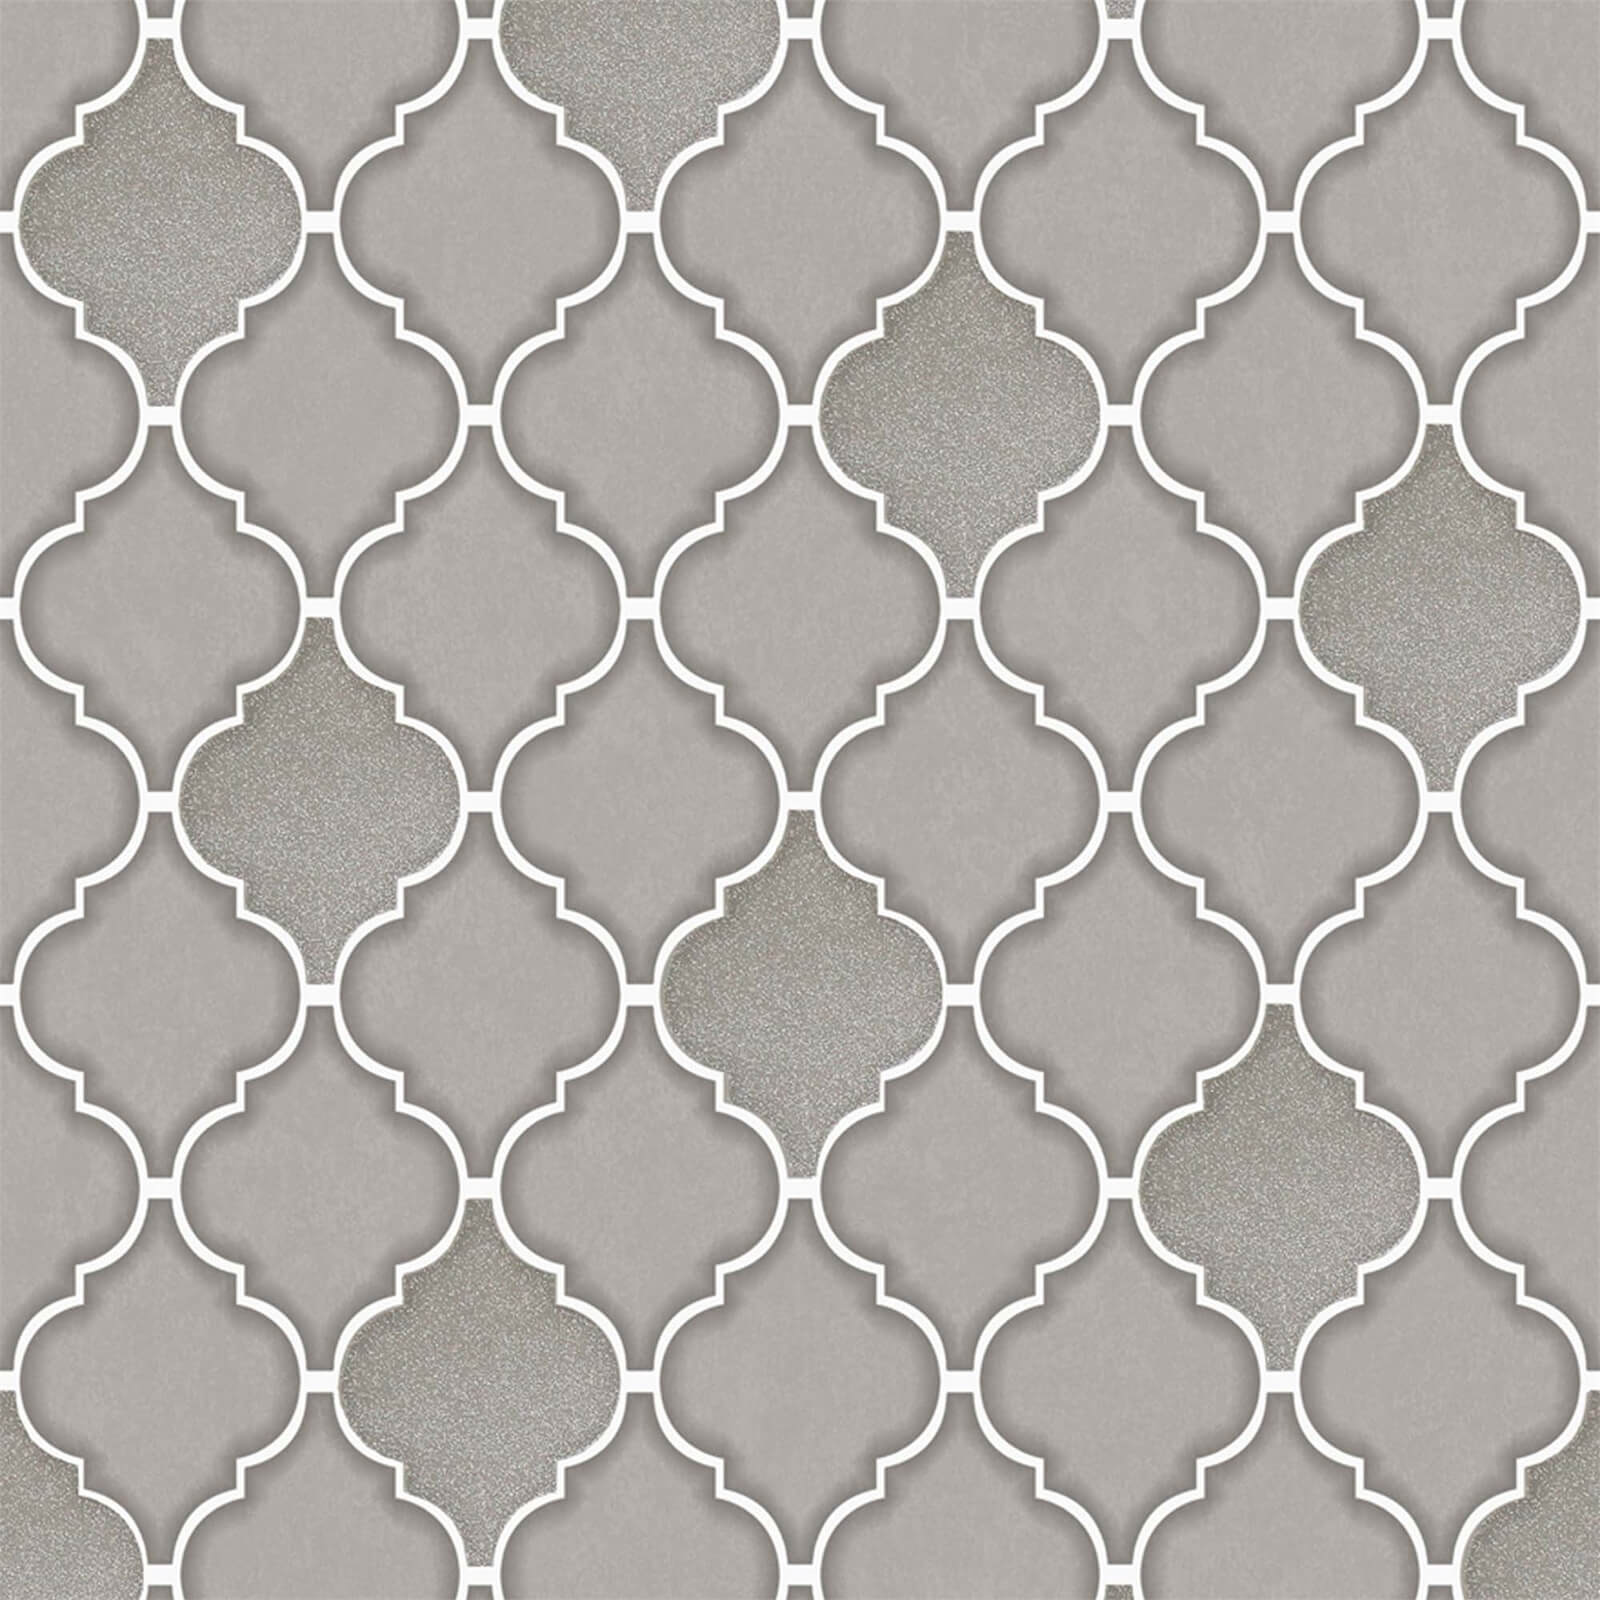 Holden Decor Trellis Tile Embossed Metallic Glitter Charcoal Wallpaper